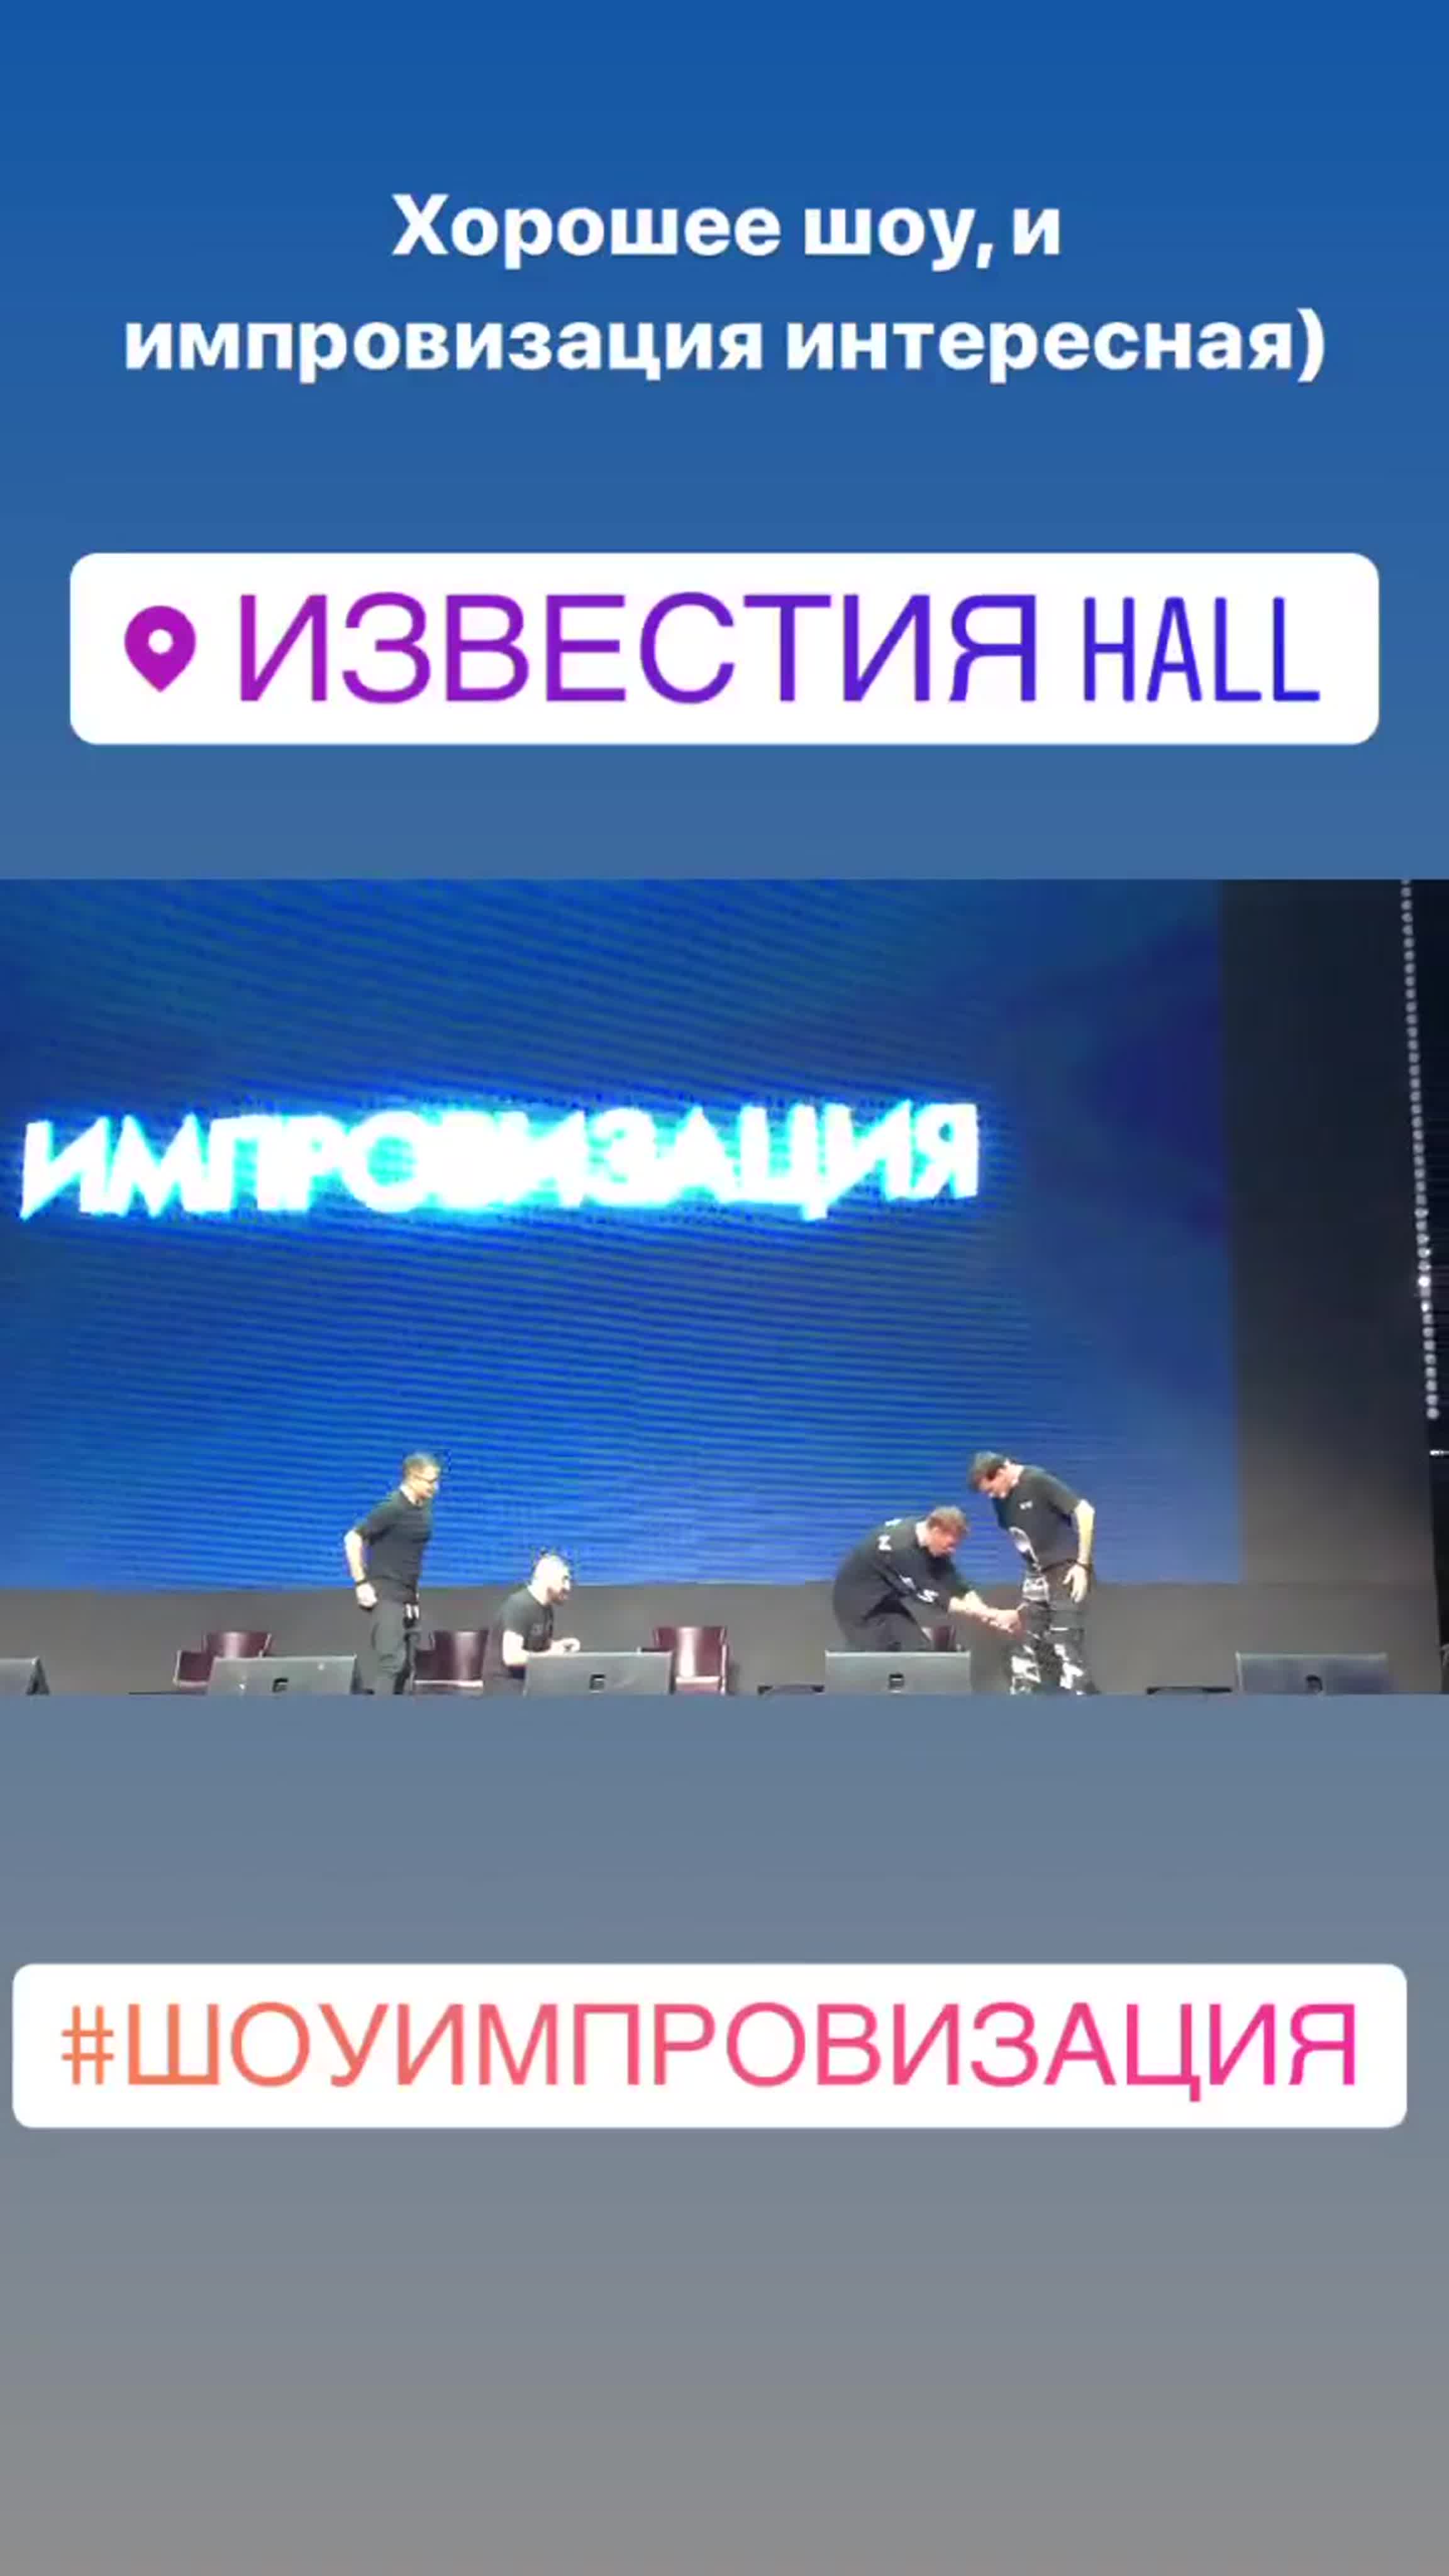 22.12.19 - Москва - Известия Hall